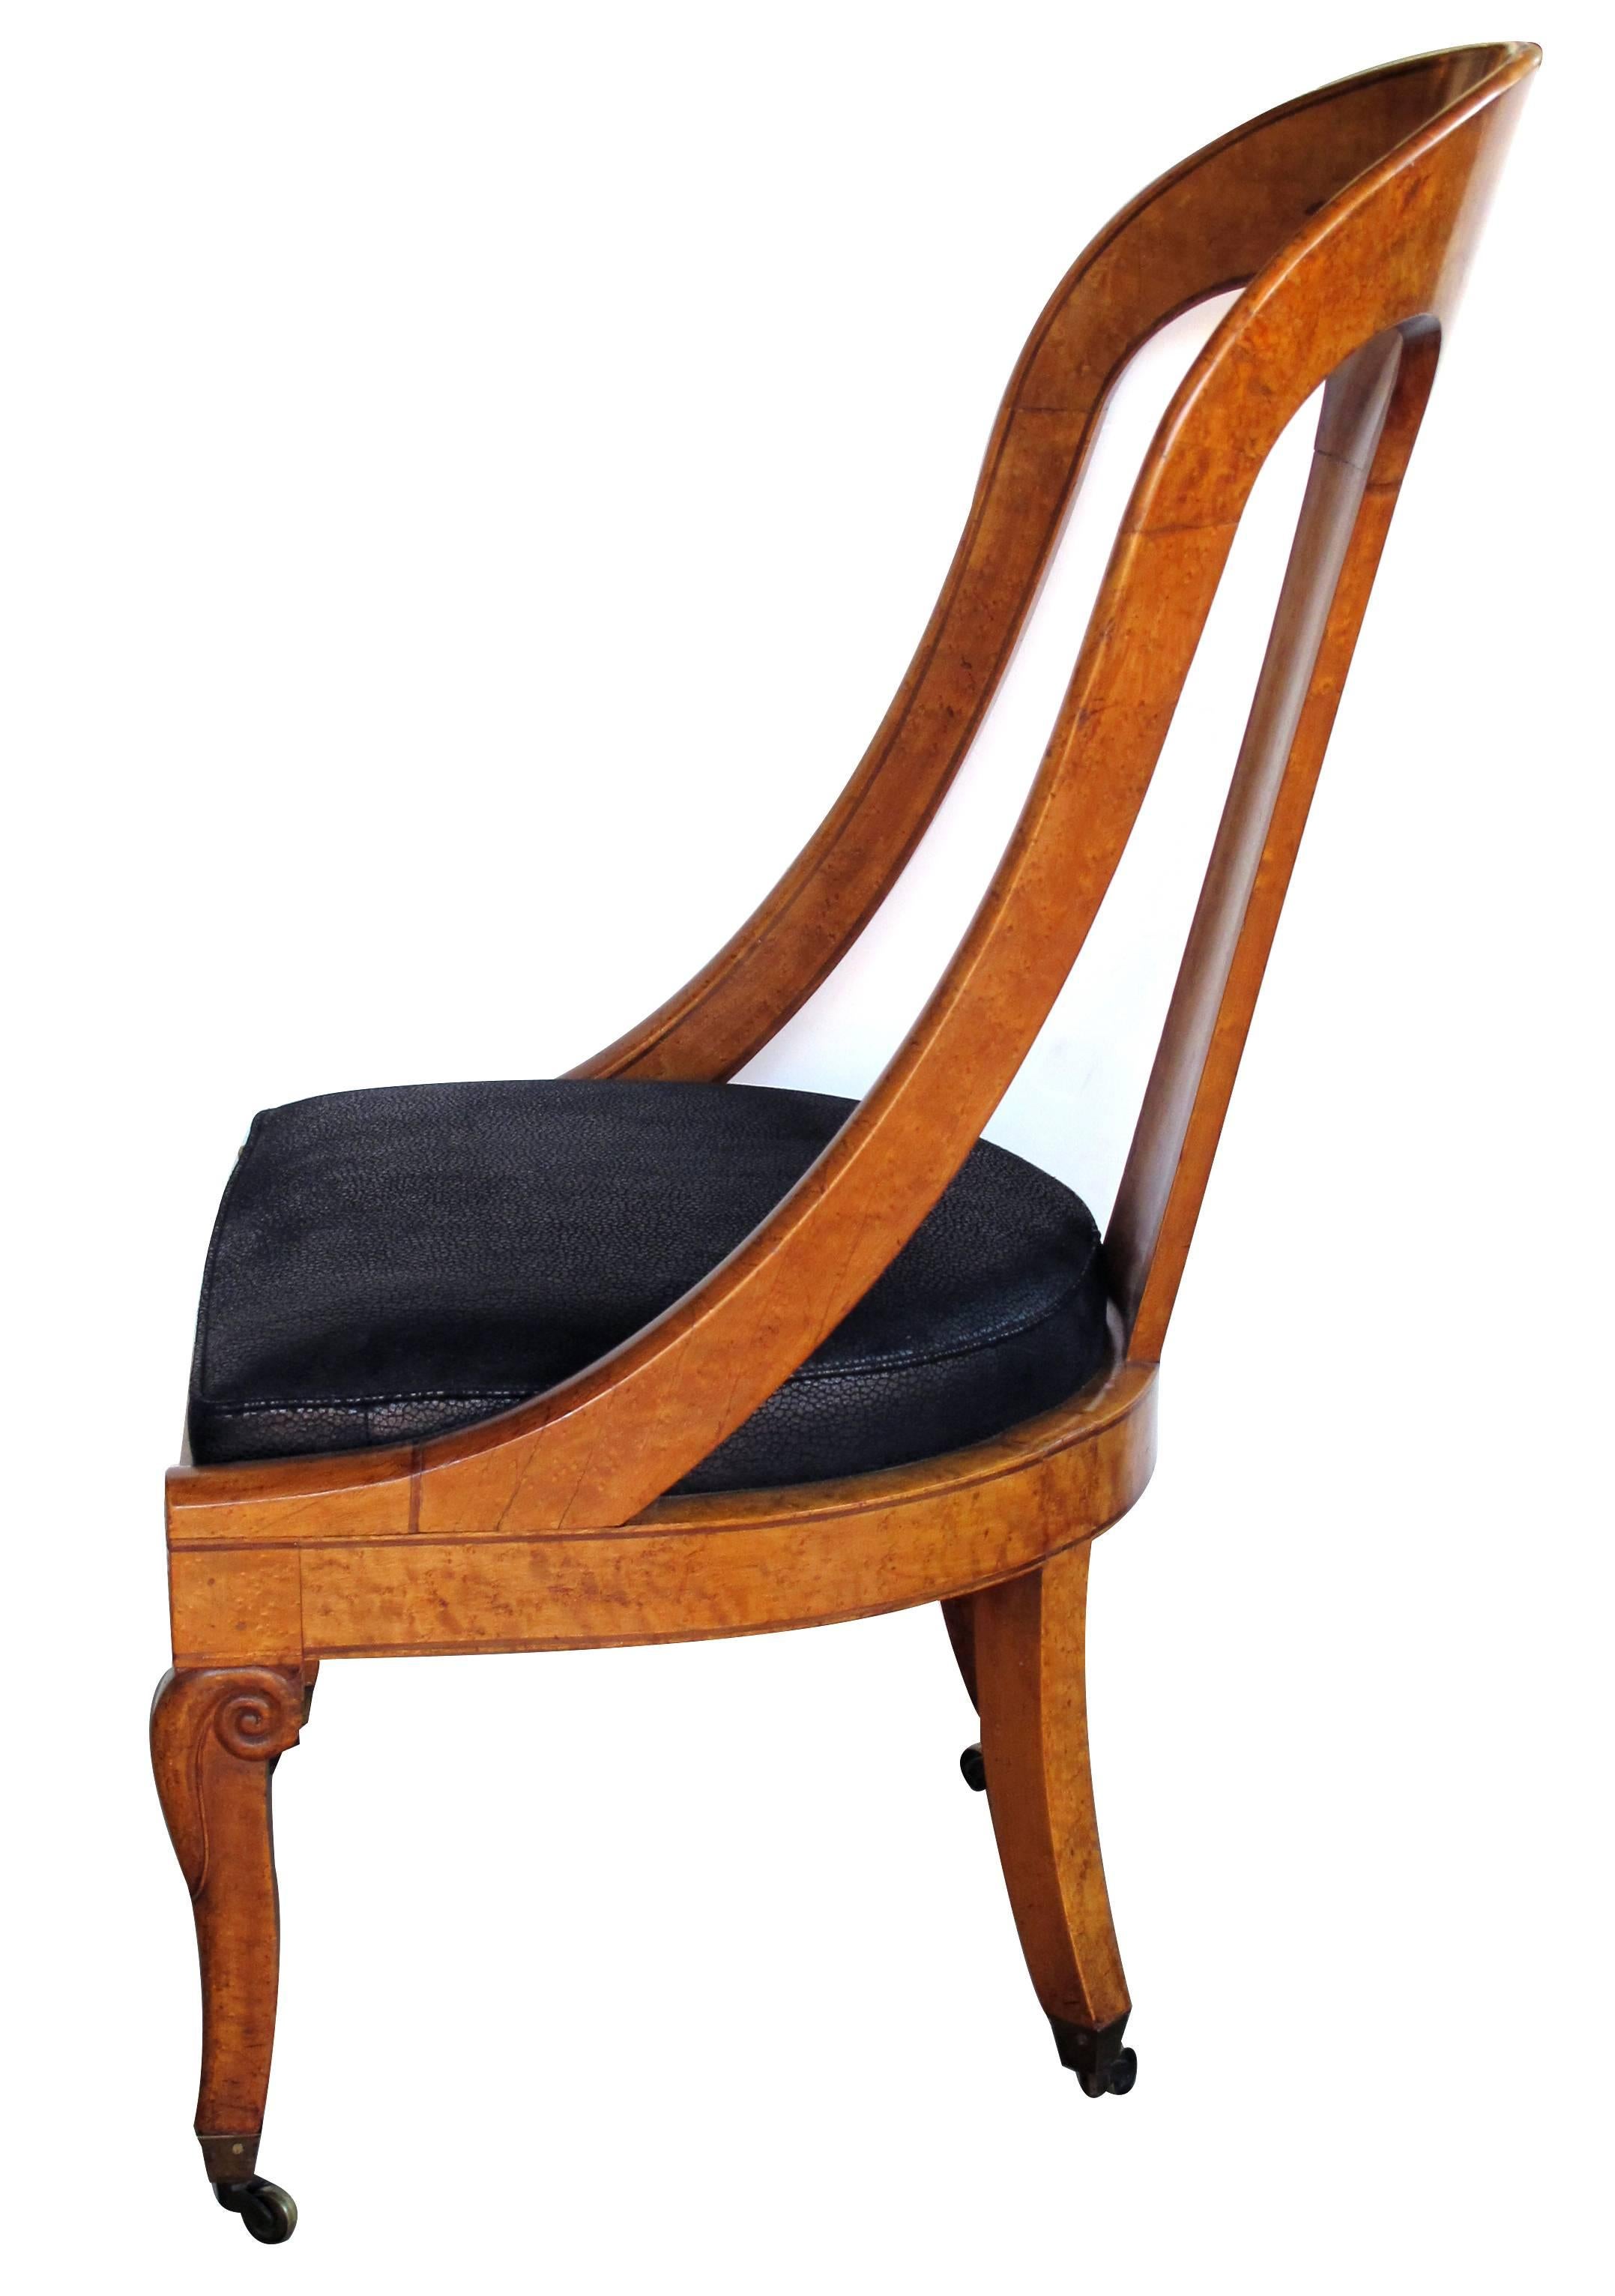 Belle chaise française Charles X à dossier en cuillère en ronce de bouleau ; le haut dossier incurvé est orné d'un bandeau floral et feuillagé stylisé ; les accoudoirs sont inclinés vers le bas ; l'assise est caissonnée et repose sur des pieds en